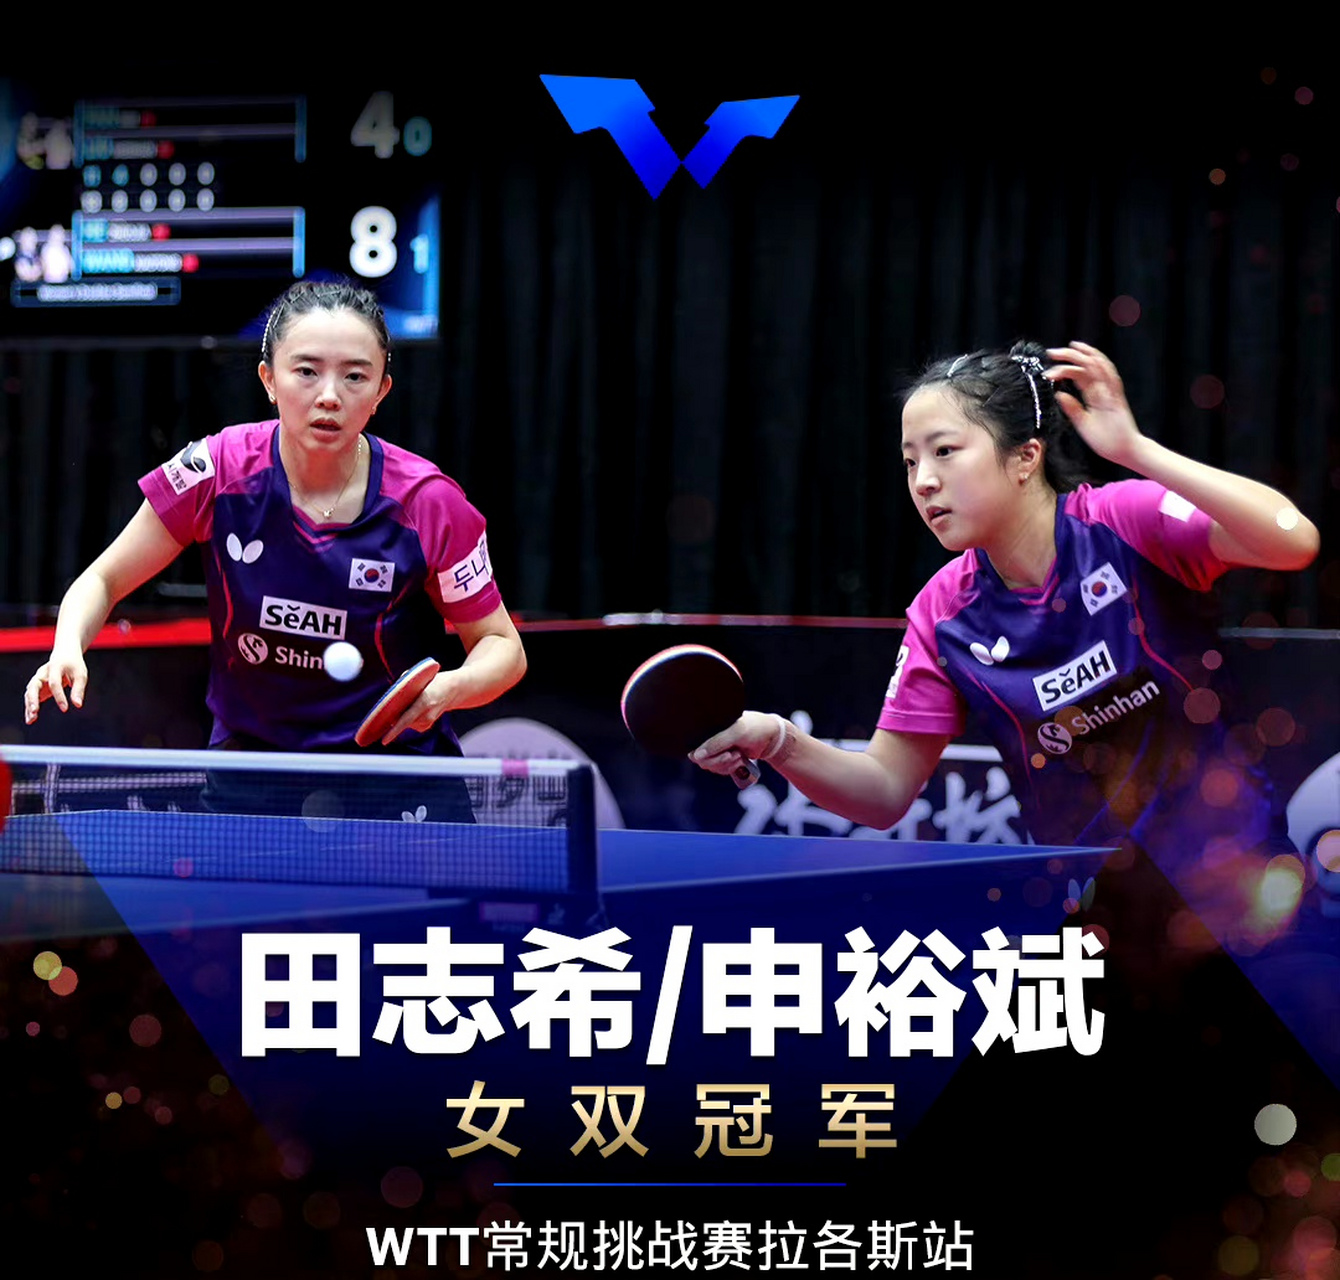 韩国乒乓球队夺得3冠,国乒仅2冠  wtt常规挑战赛拉各斯站的比赛结束